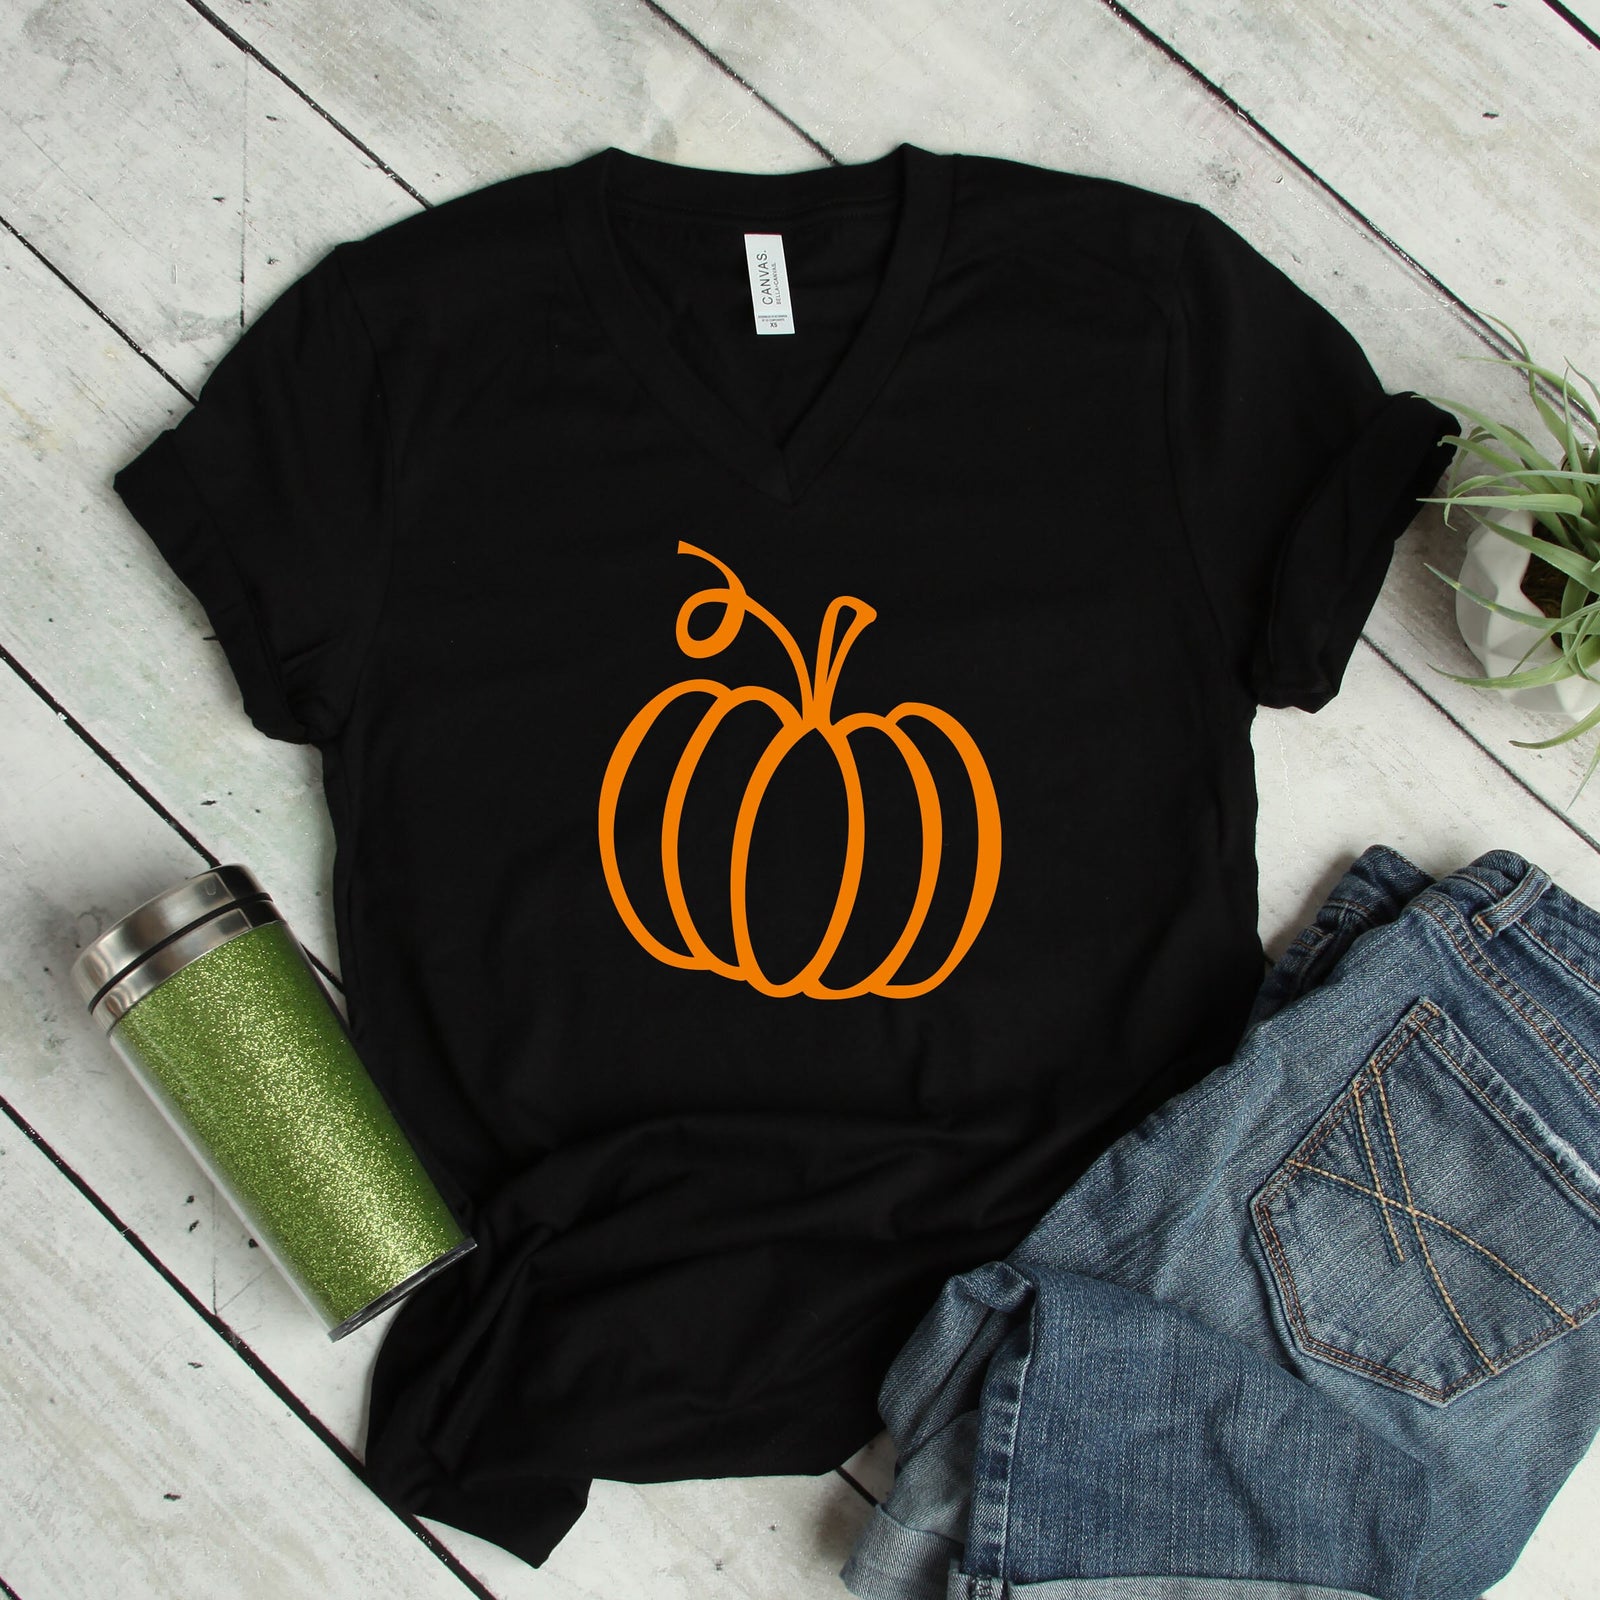 Pumpkin Outline - Happy Halloween Adult T Shirt - Halloween -Classic Pumpkin Cut Out Face